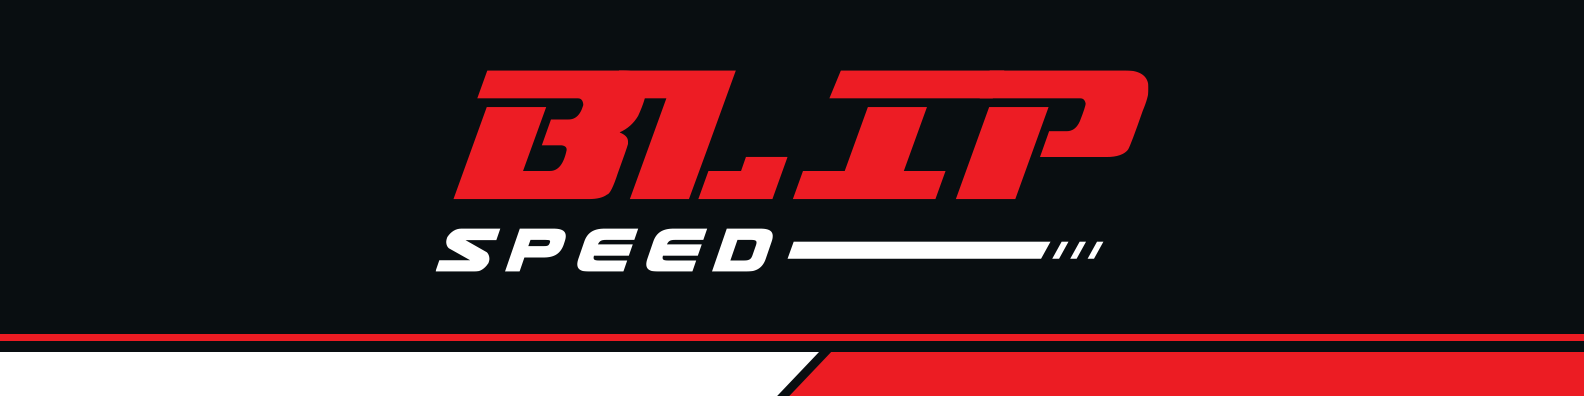 Blip speed logo